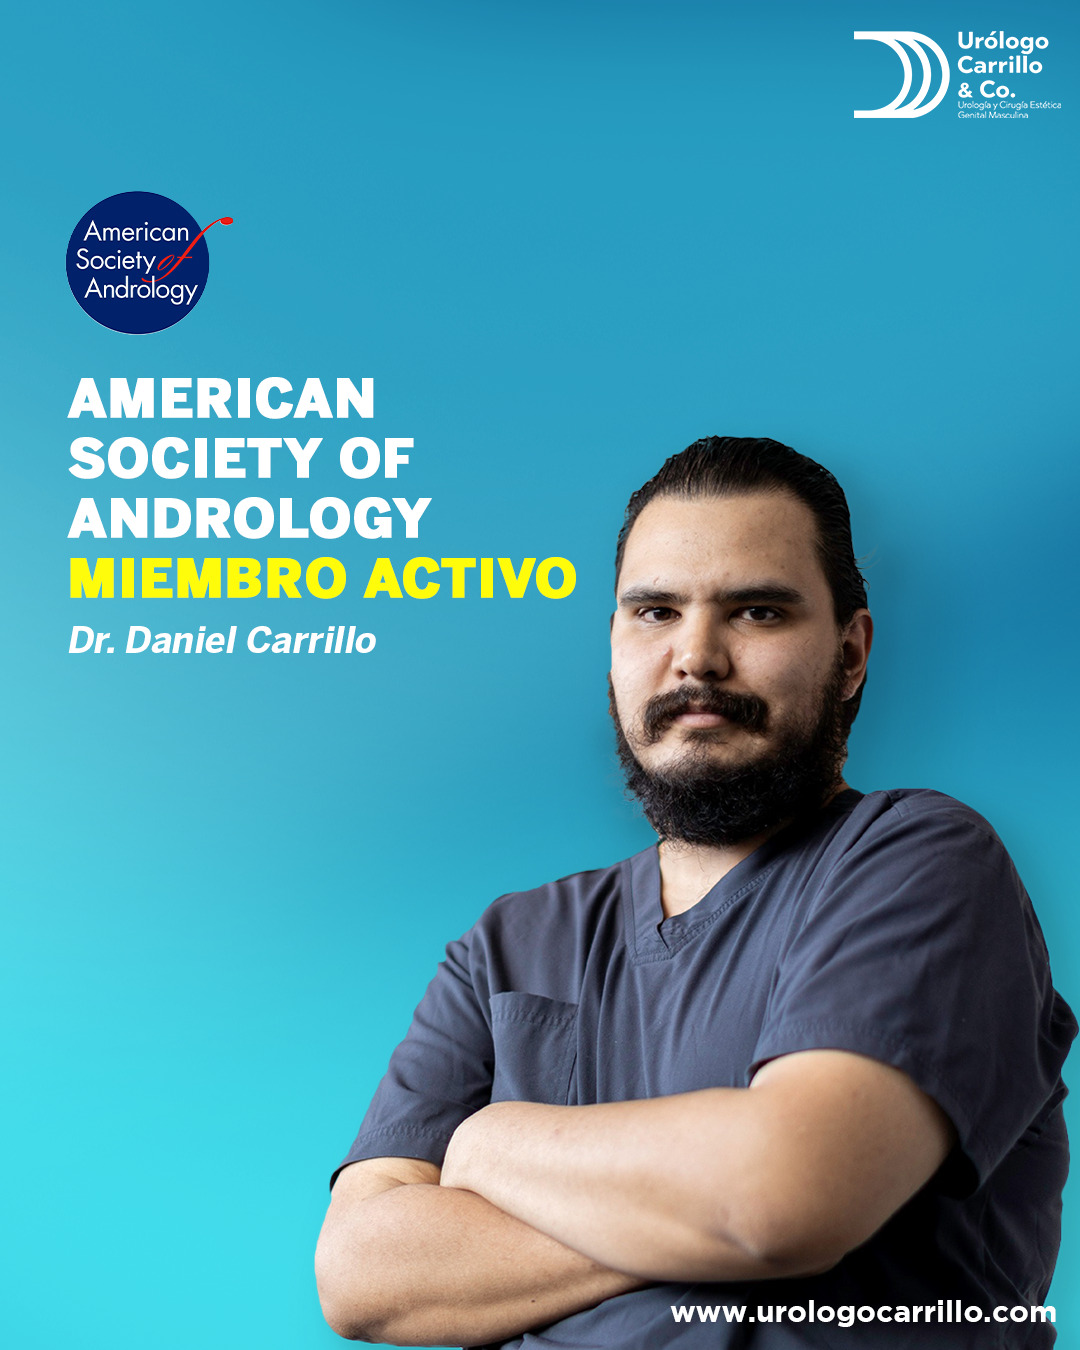 El Dr. Daniel Carrillo es un  urólogo experto en andrología, miembro de la sociedad americana de andrología